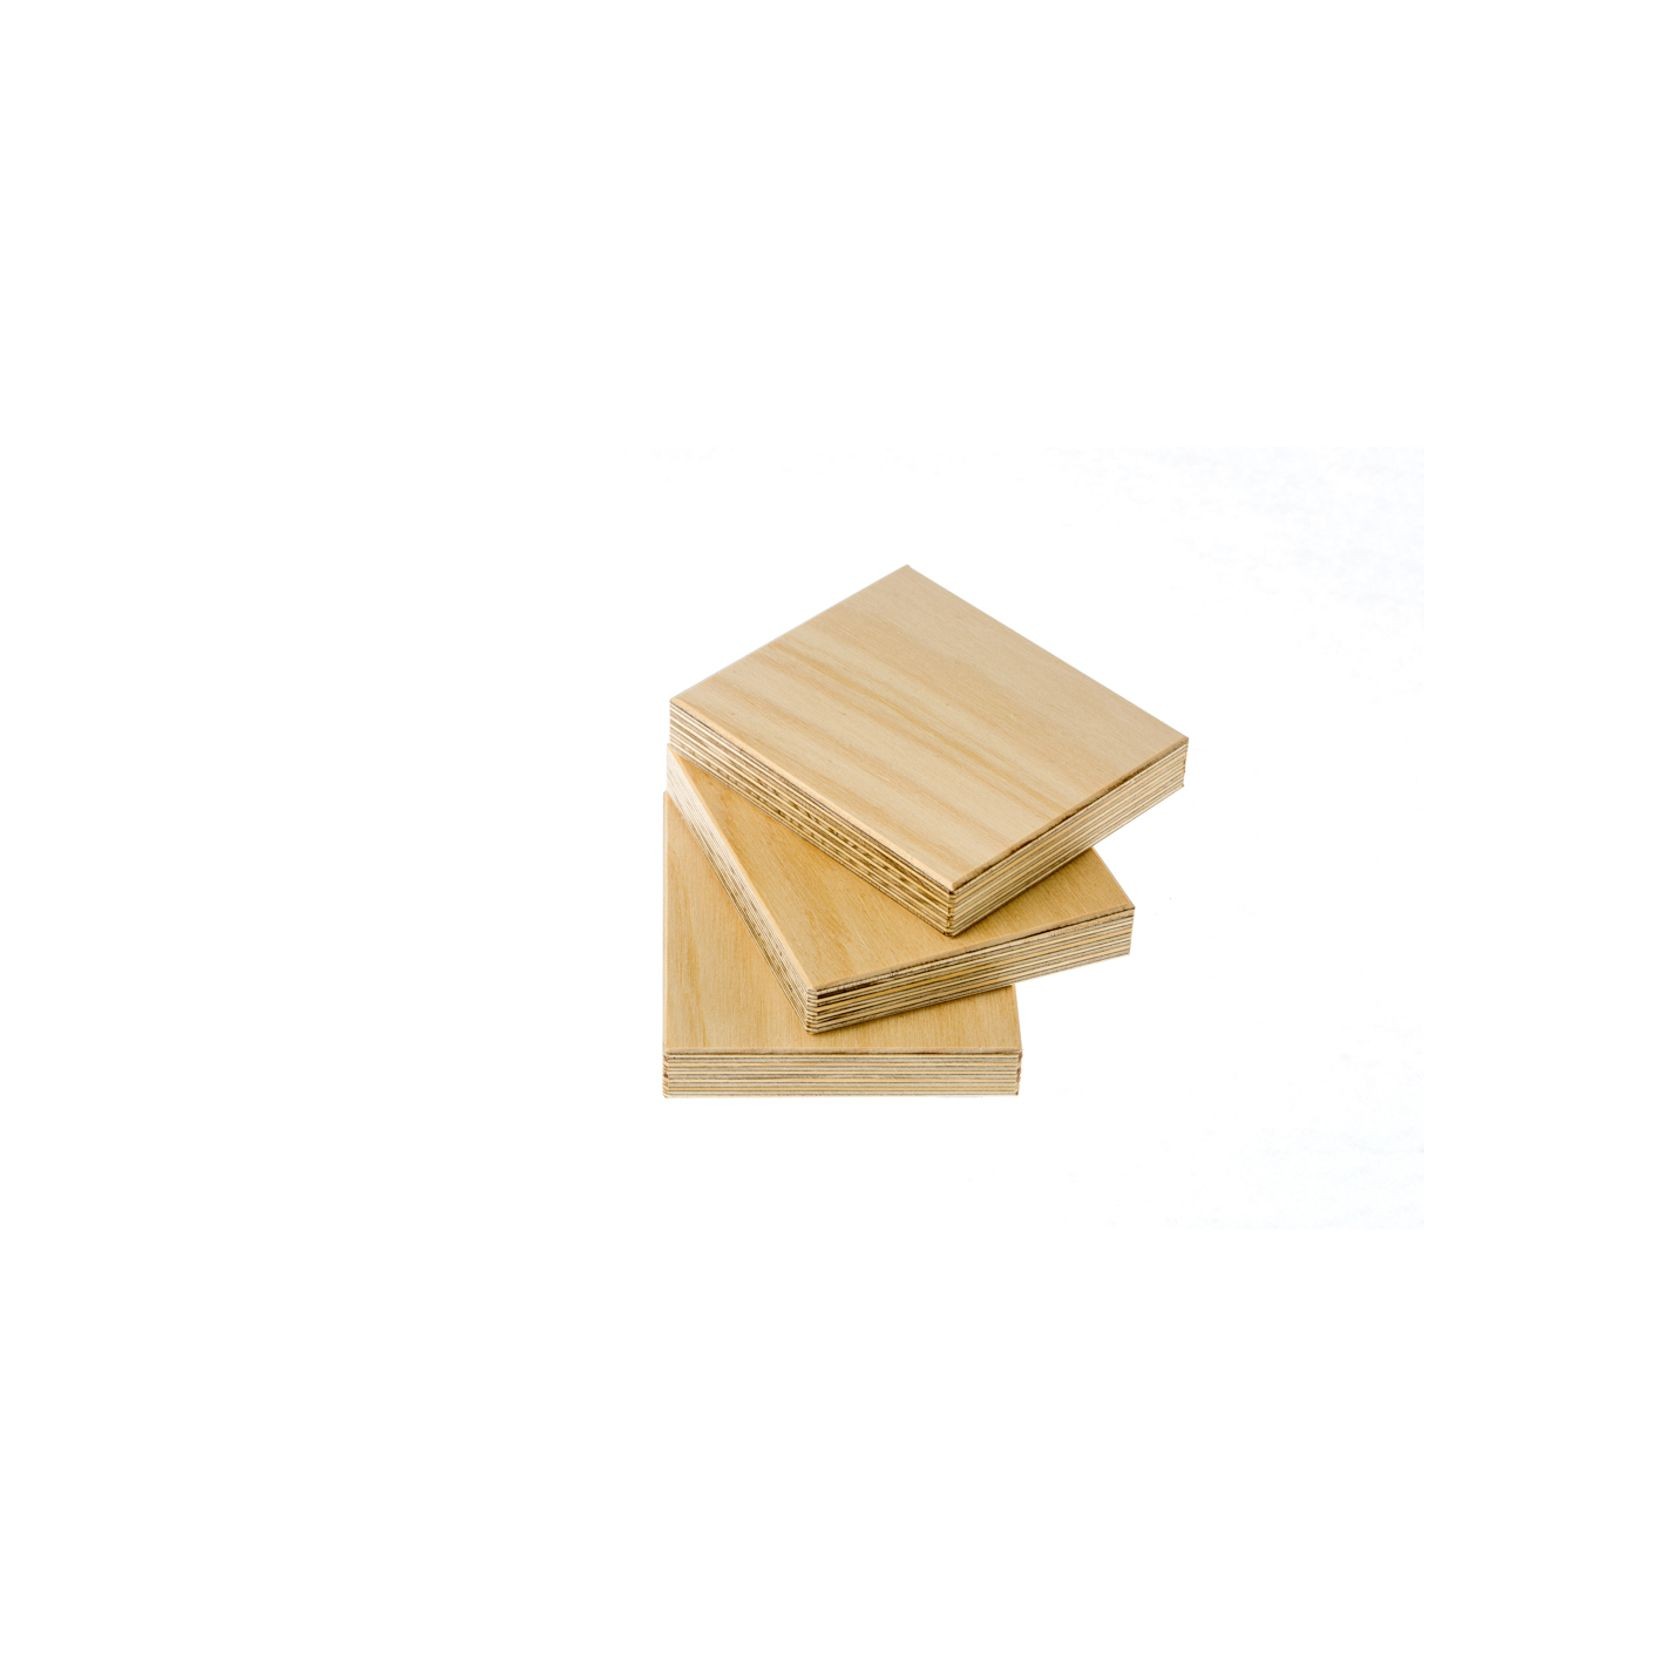 Hoop Pine | Joinery Plywood gallery detail image